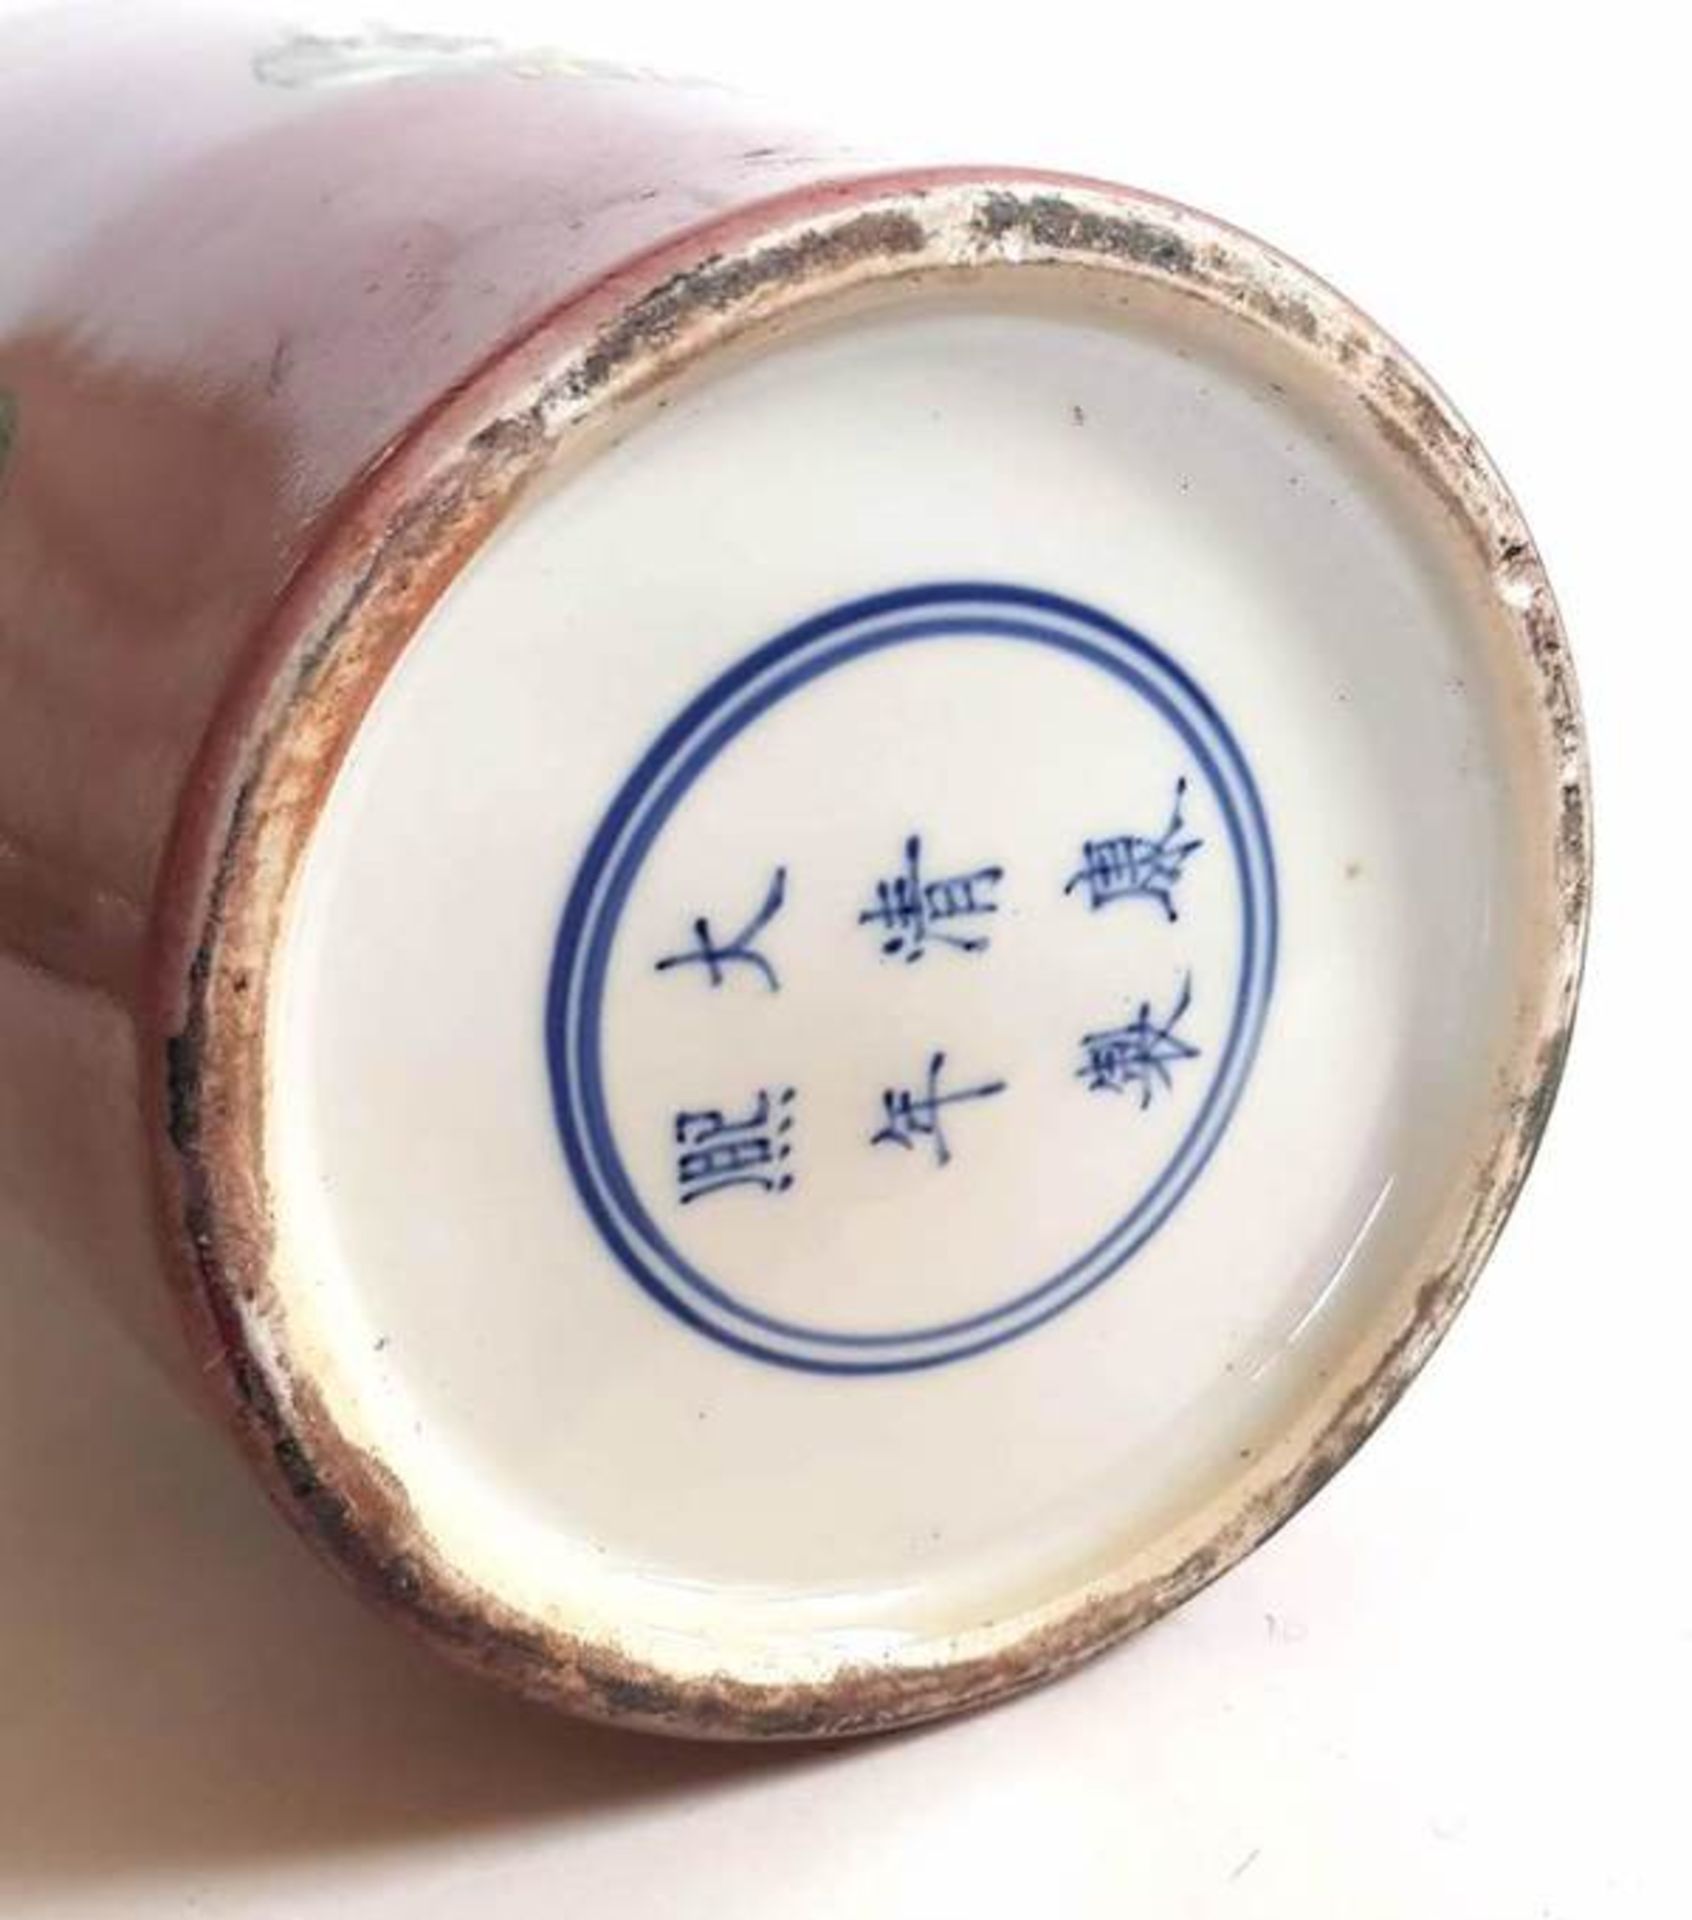 (Aziatica) Porselein vaas China eind 20e eeuwVaas met bordeaux rood fond met decoratie van vazen. - Bild 7 aus 7